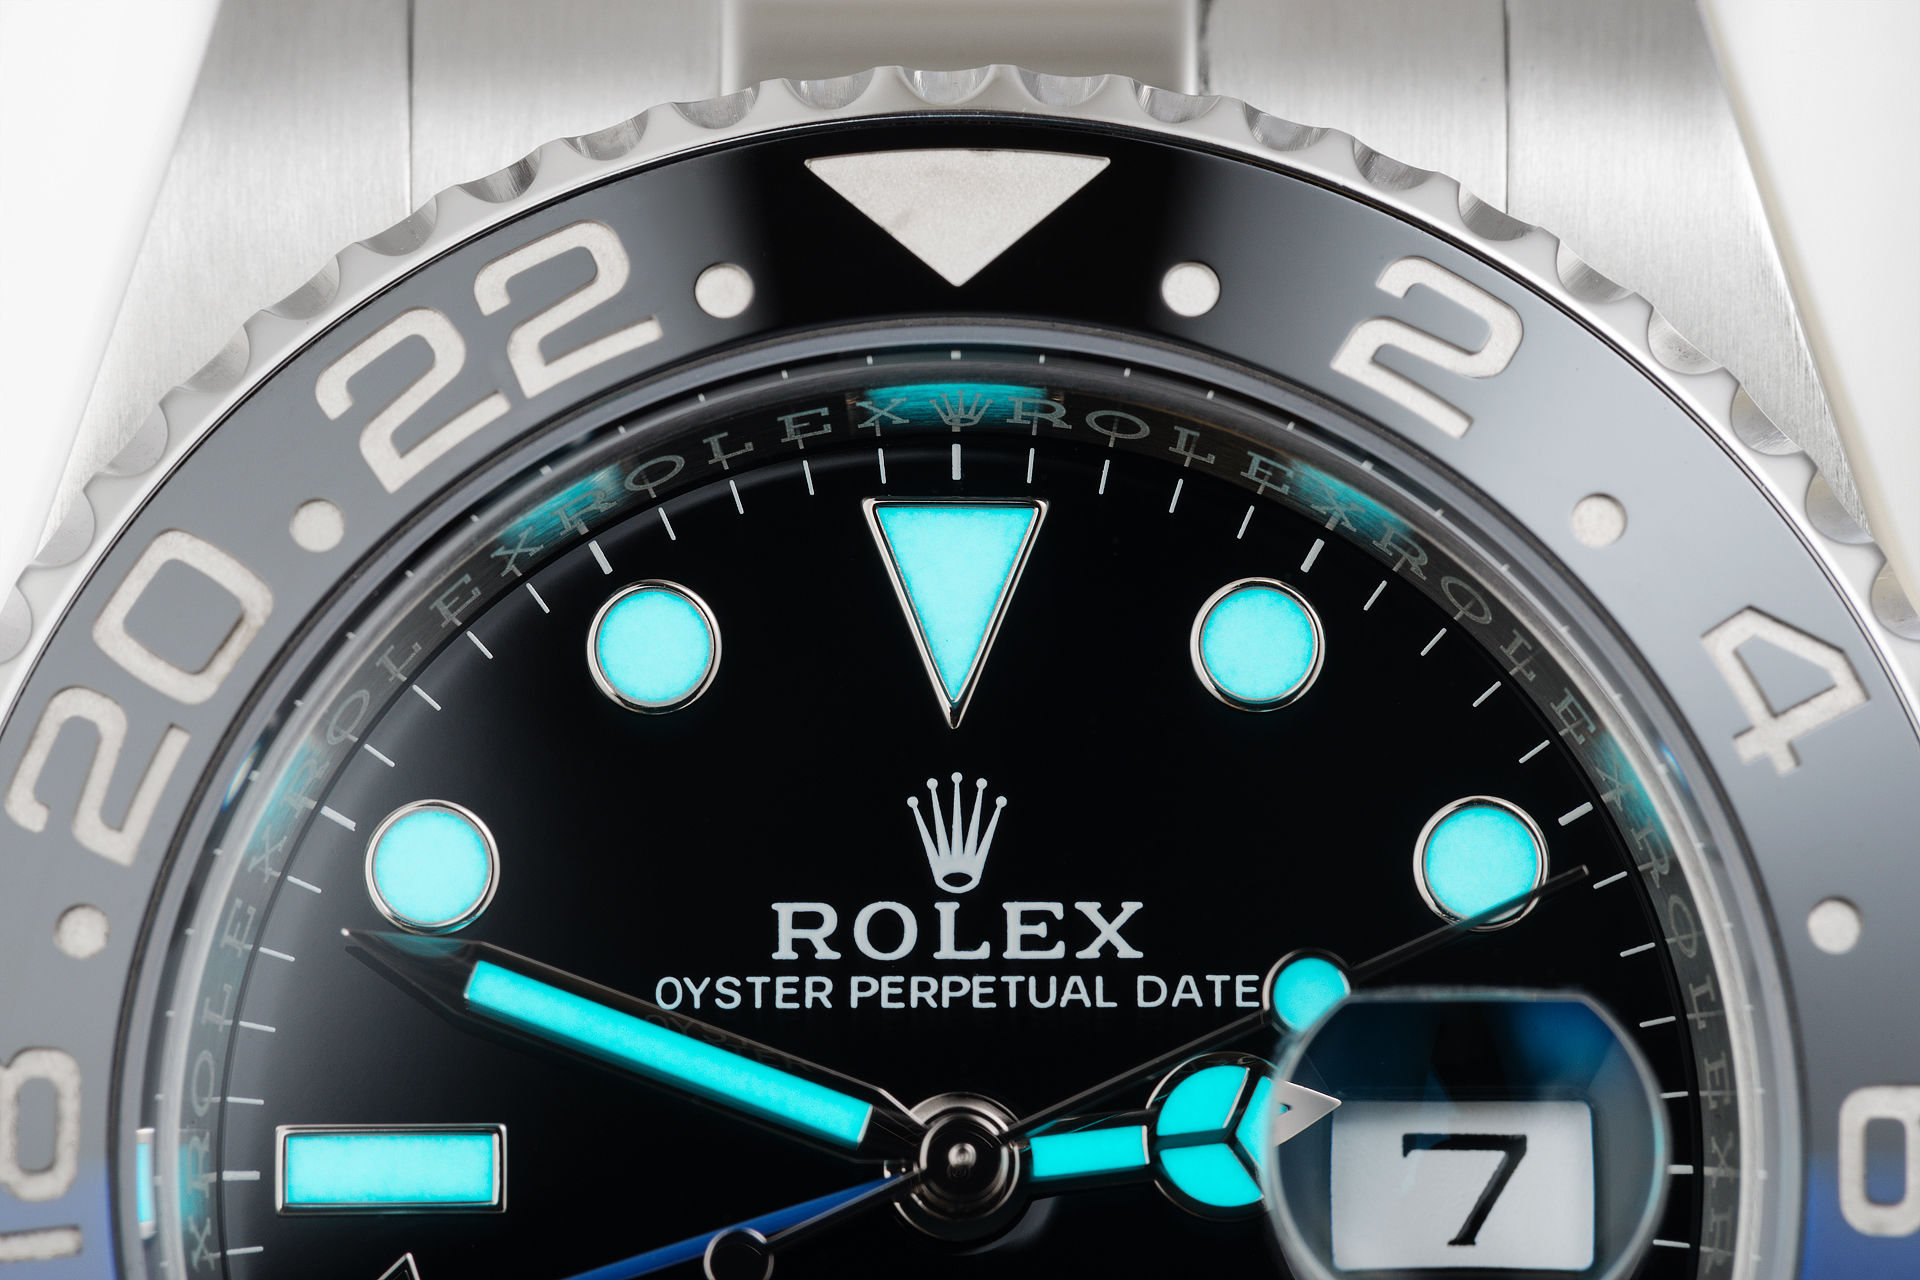 ref 116710BLNR | Batman 5 Year Warranty | Rolex GMT-Master II